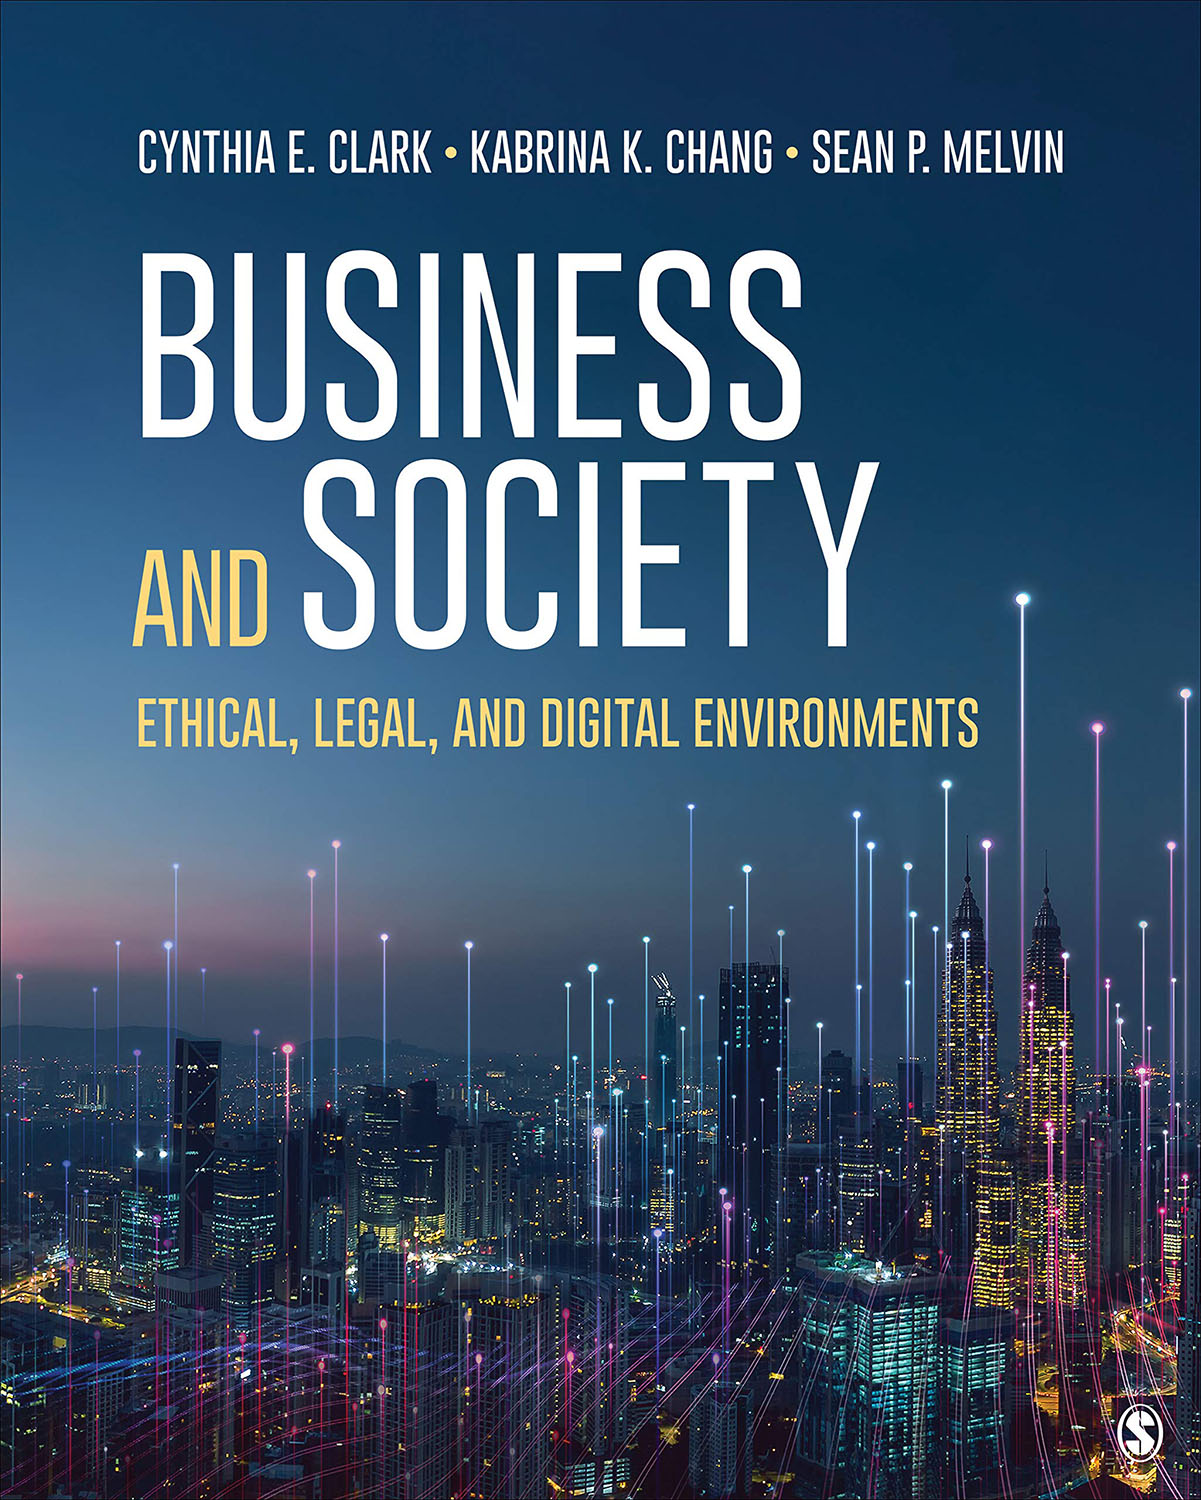 Business and Society by Cynthia E. Clark, Kabrina K. Chang, Sean P. Melvin